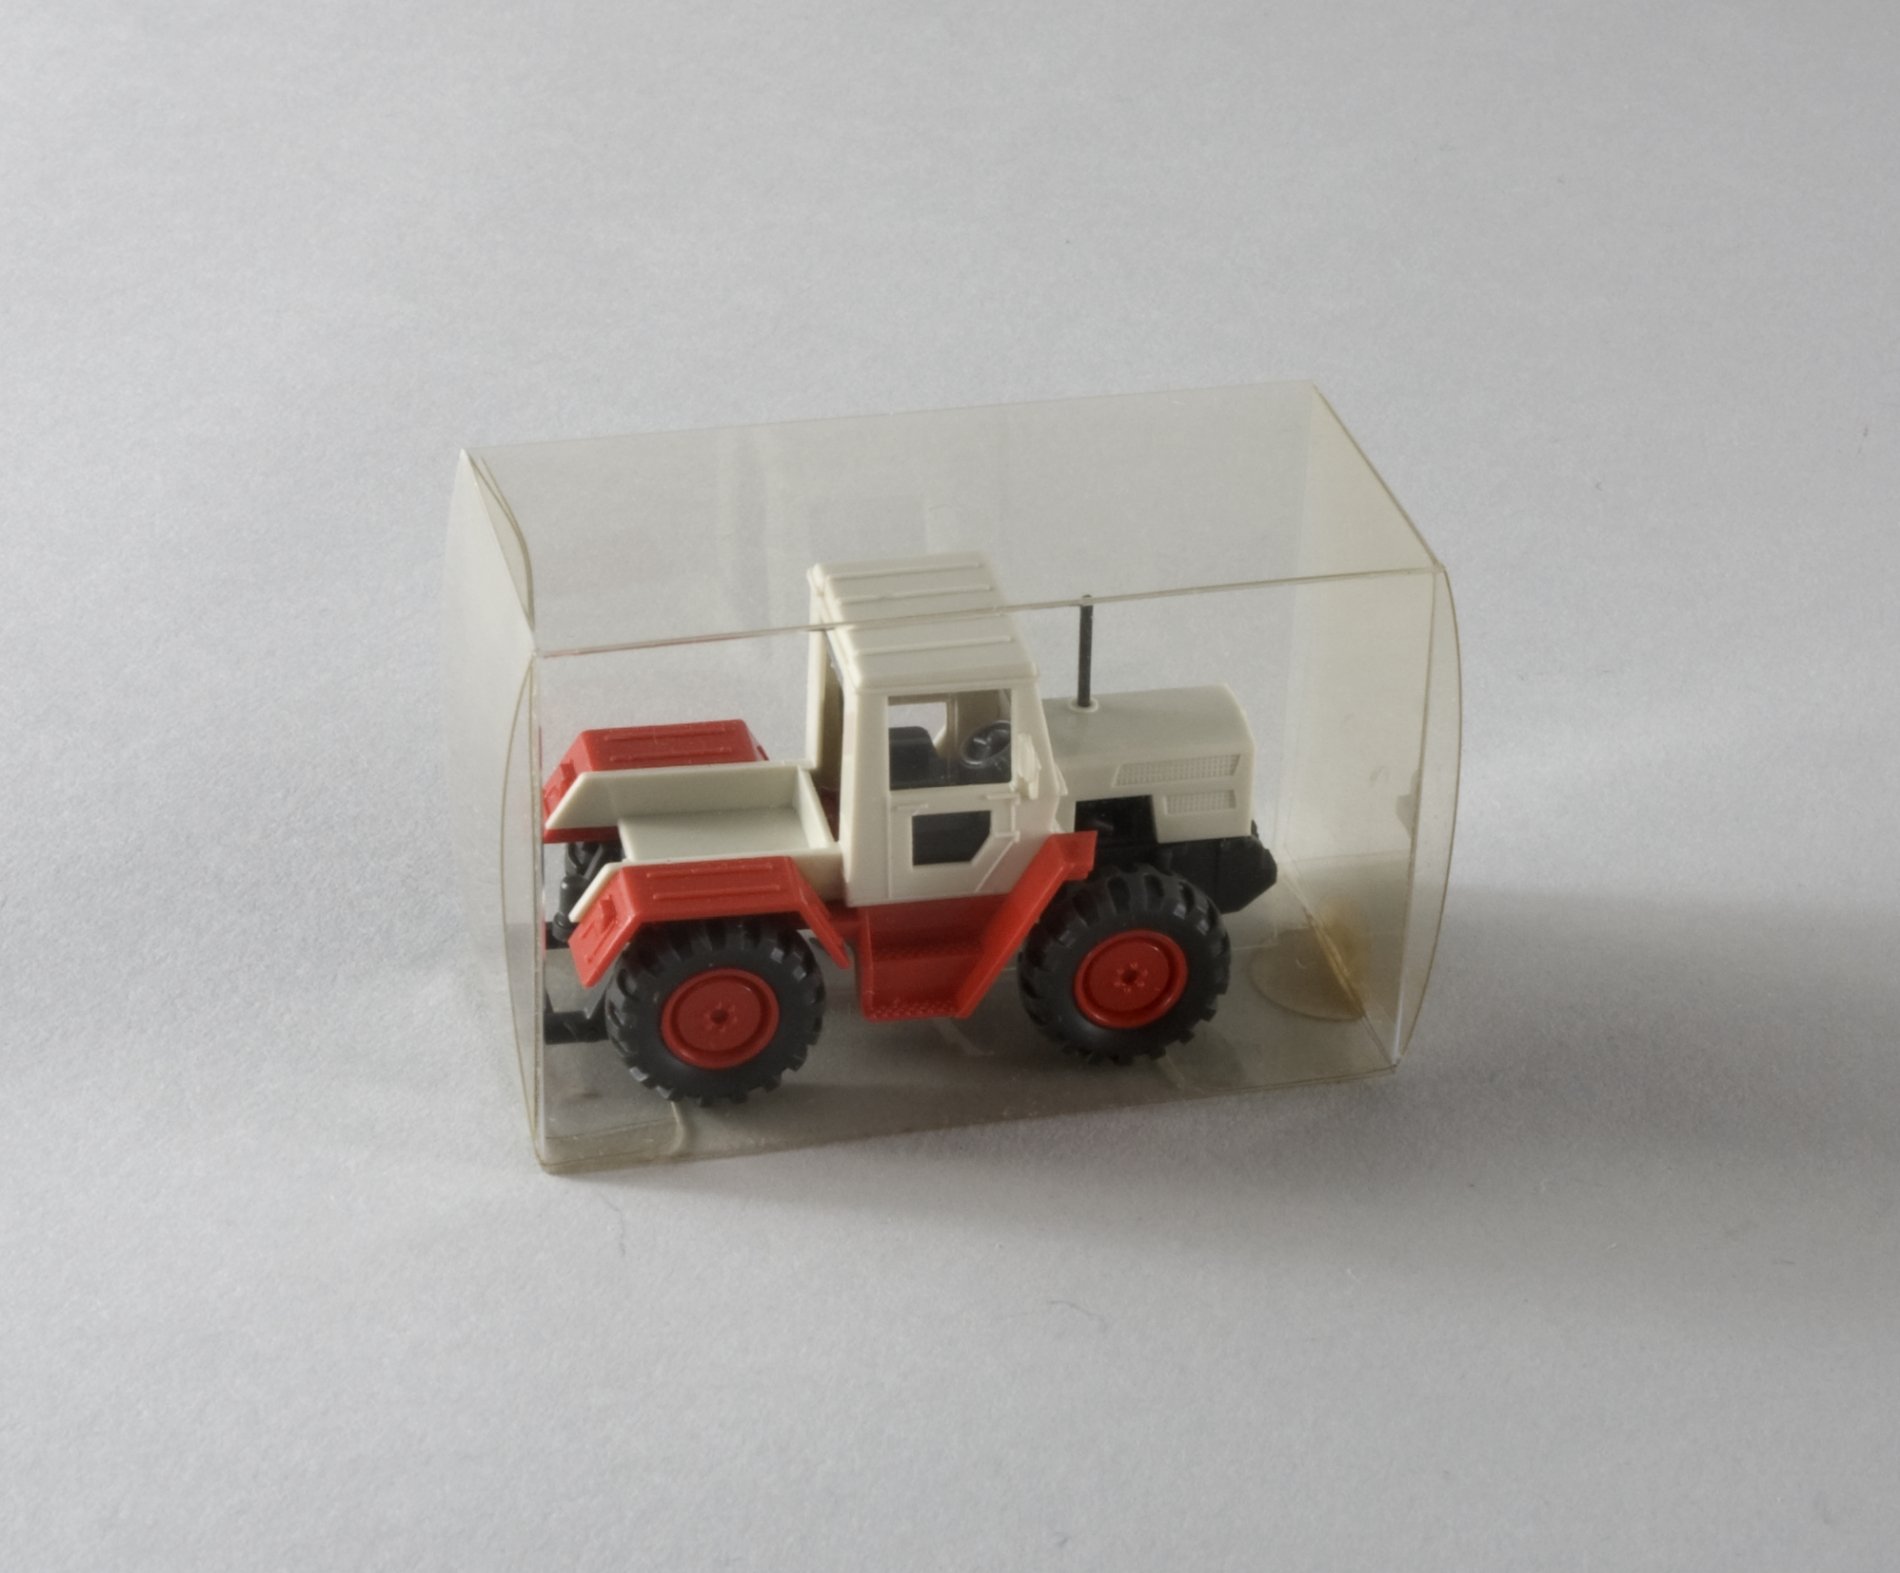 Spielzeugmodell: "MB-Trac"-Traktor (Stiftung Domäne Dahlem - Landgut und Museum, Weiternutzung nur mit Genehmigung des Museums CC BY-NC-SA)